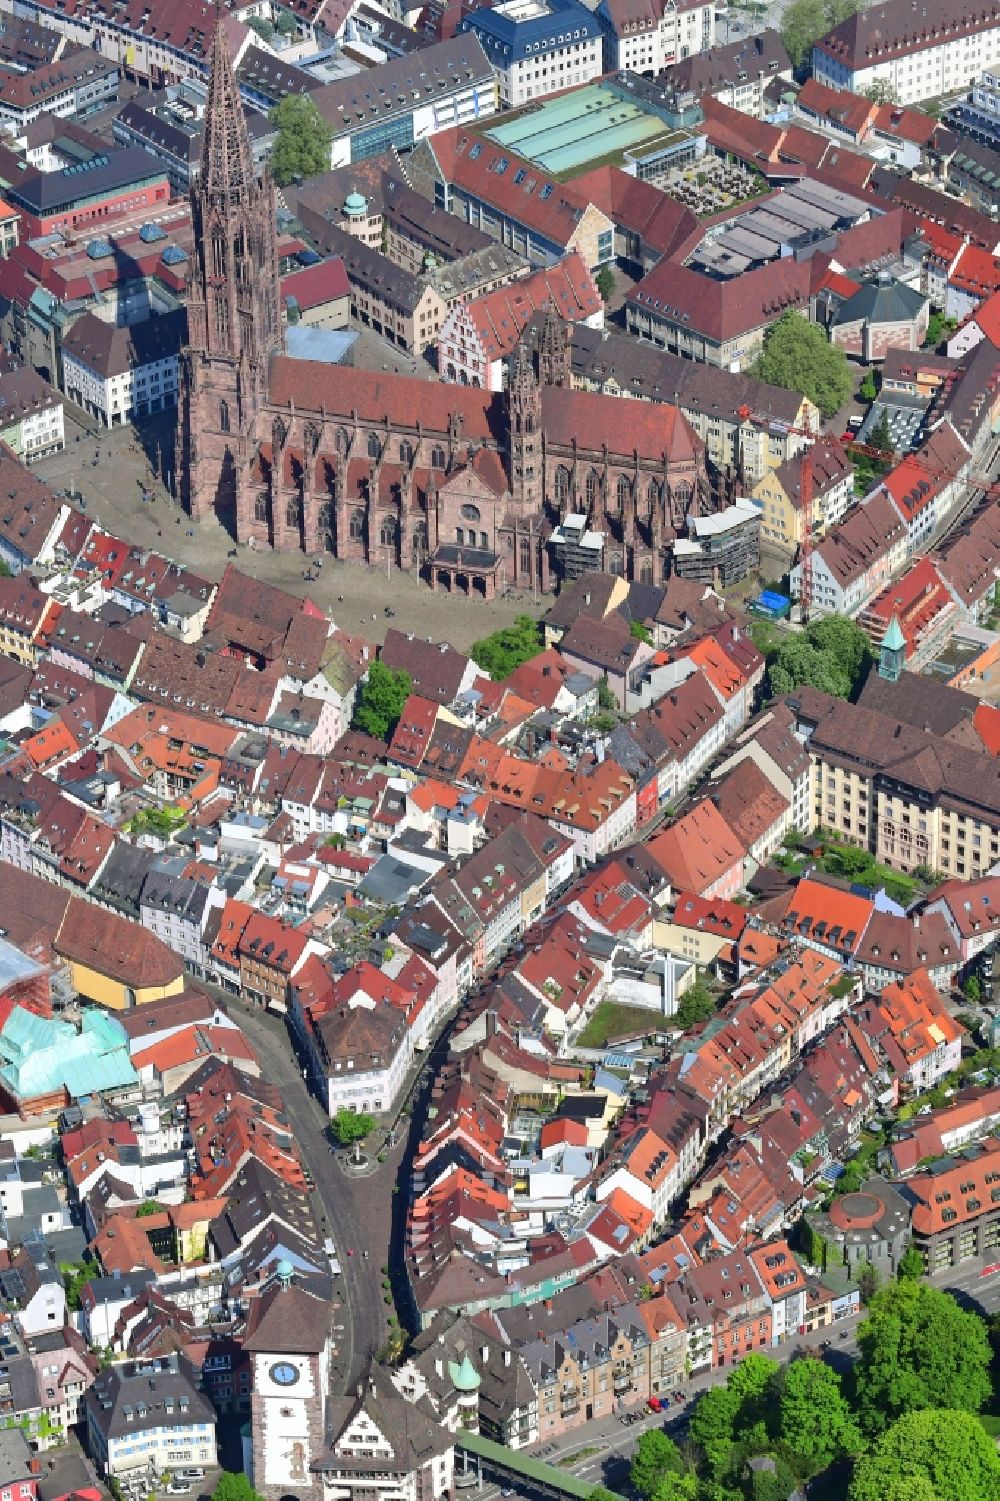 Luftbild Freiburg im Breisgau - Schwabentor, Stadtzentrum und Altstadt mit Münster im Innenstadtbereich in Freiburg im Breisgau im Bundesland Baden-Württemberg, Deutschland